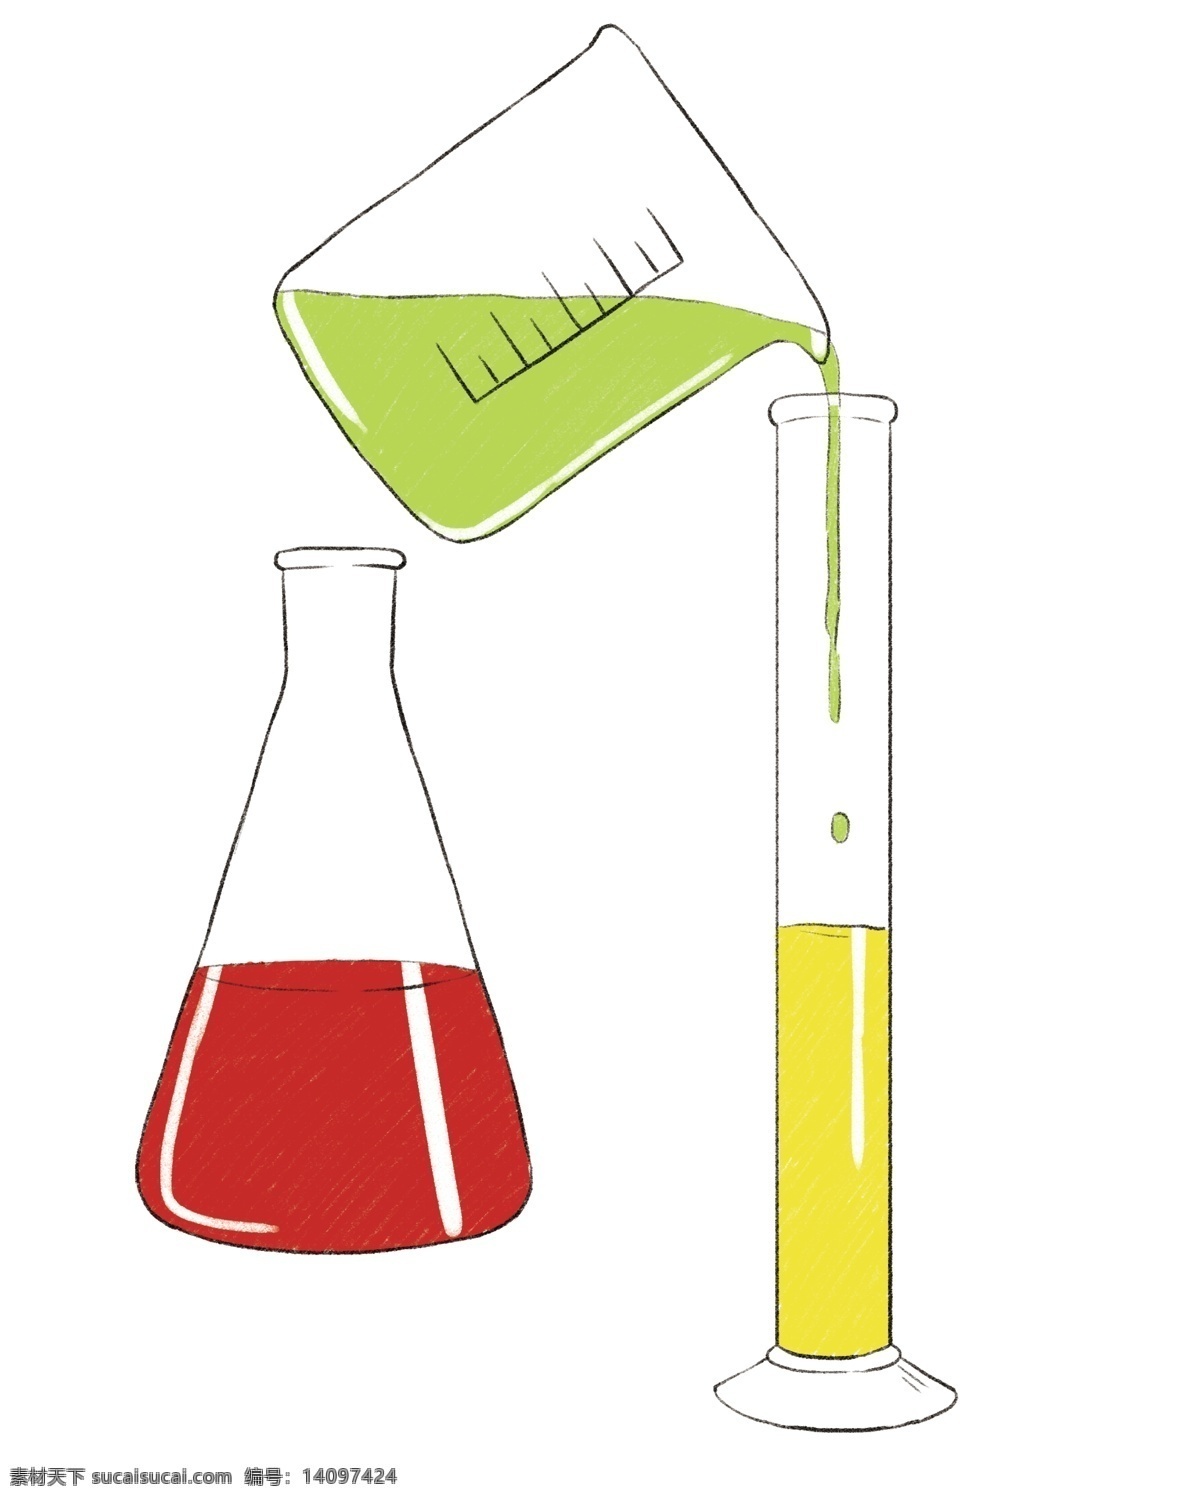 化学实验 用品 插图 白色试管 绿色液体 化学器材 化学课堂 教学仪器 仪器图案 仪器装饰 化学仪器